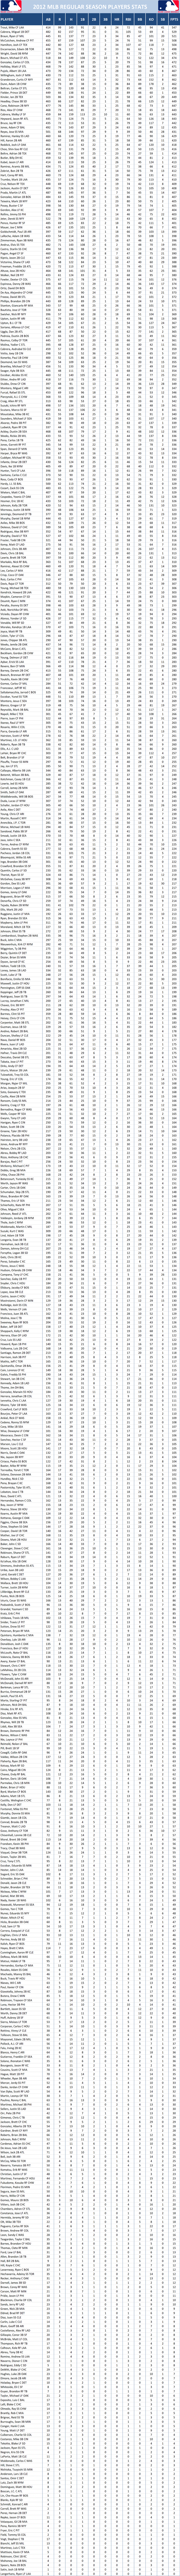 2012 Major League Baseball Pool Season Player Stats